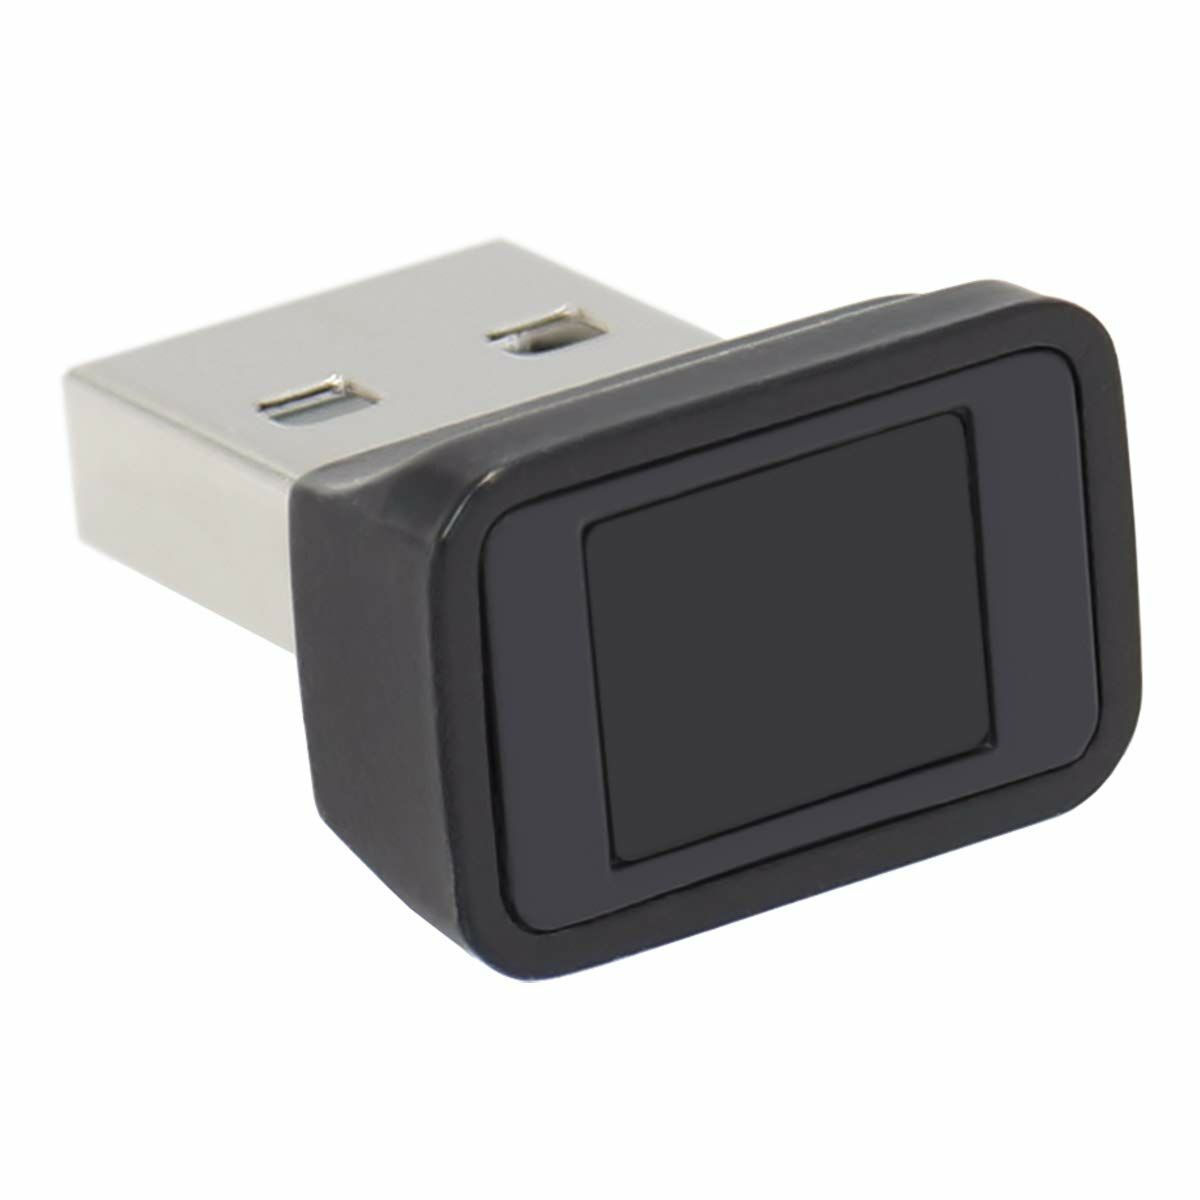 Adaptador USB Feintech FPS00200 Lector de huella (Reacondicionado A+)